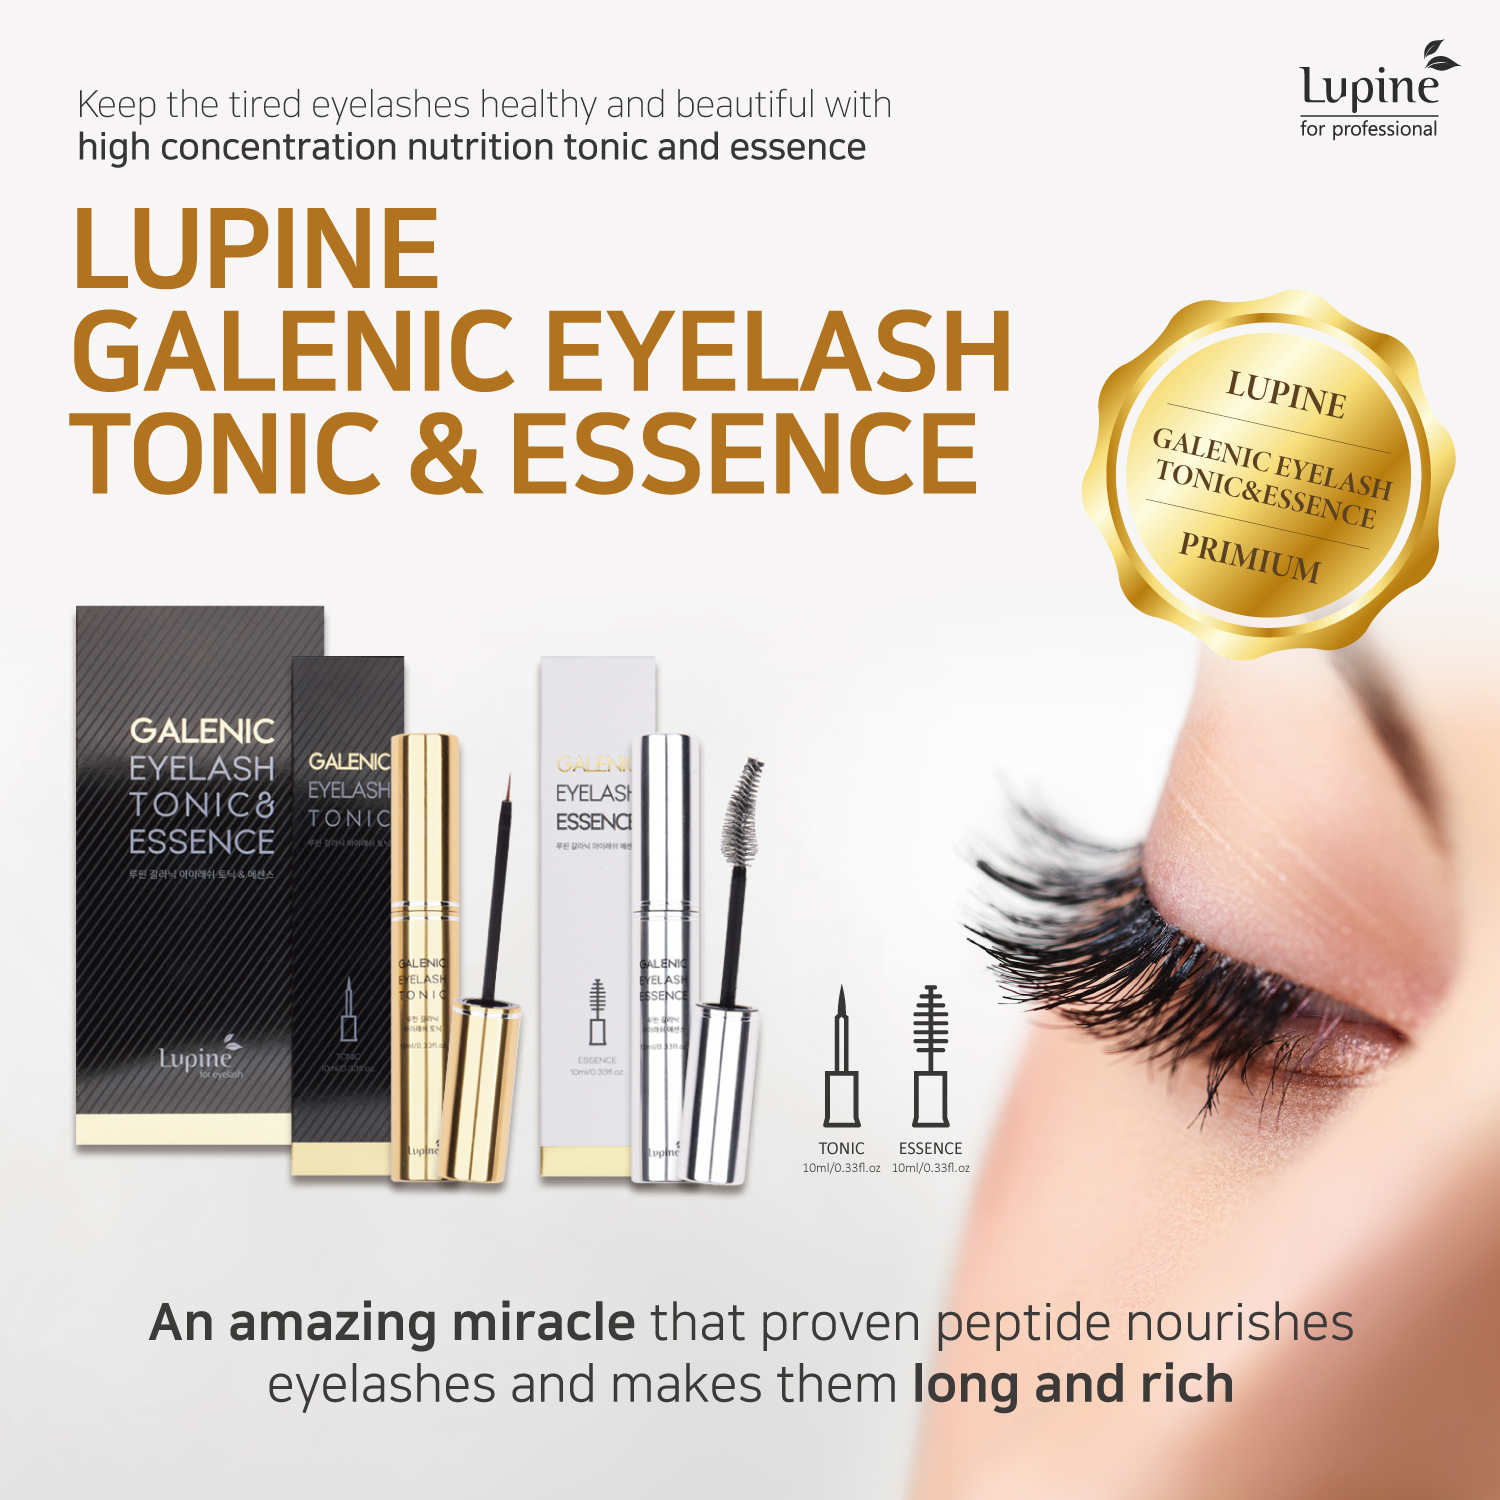 GALENIC eyelash essence